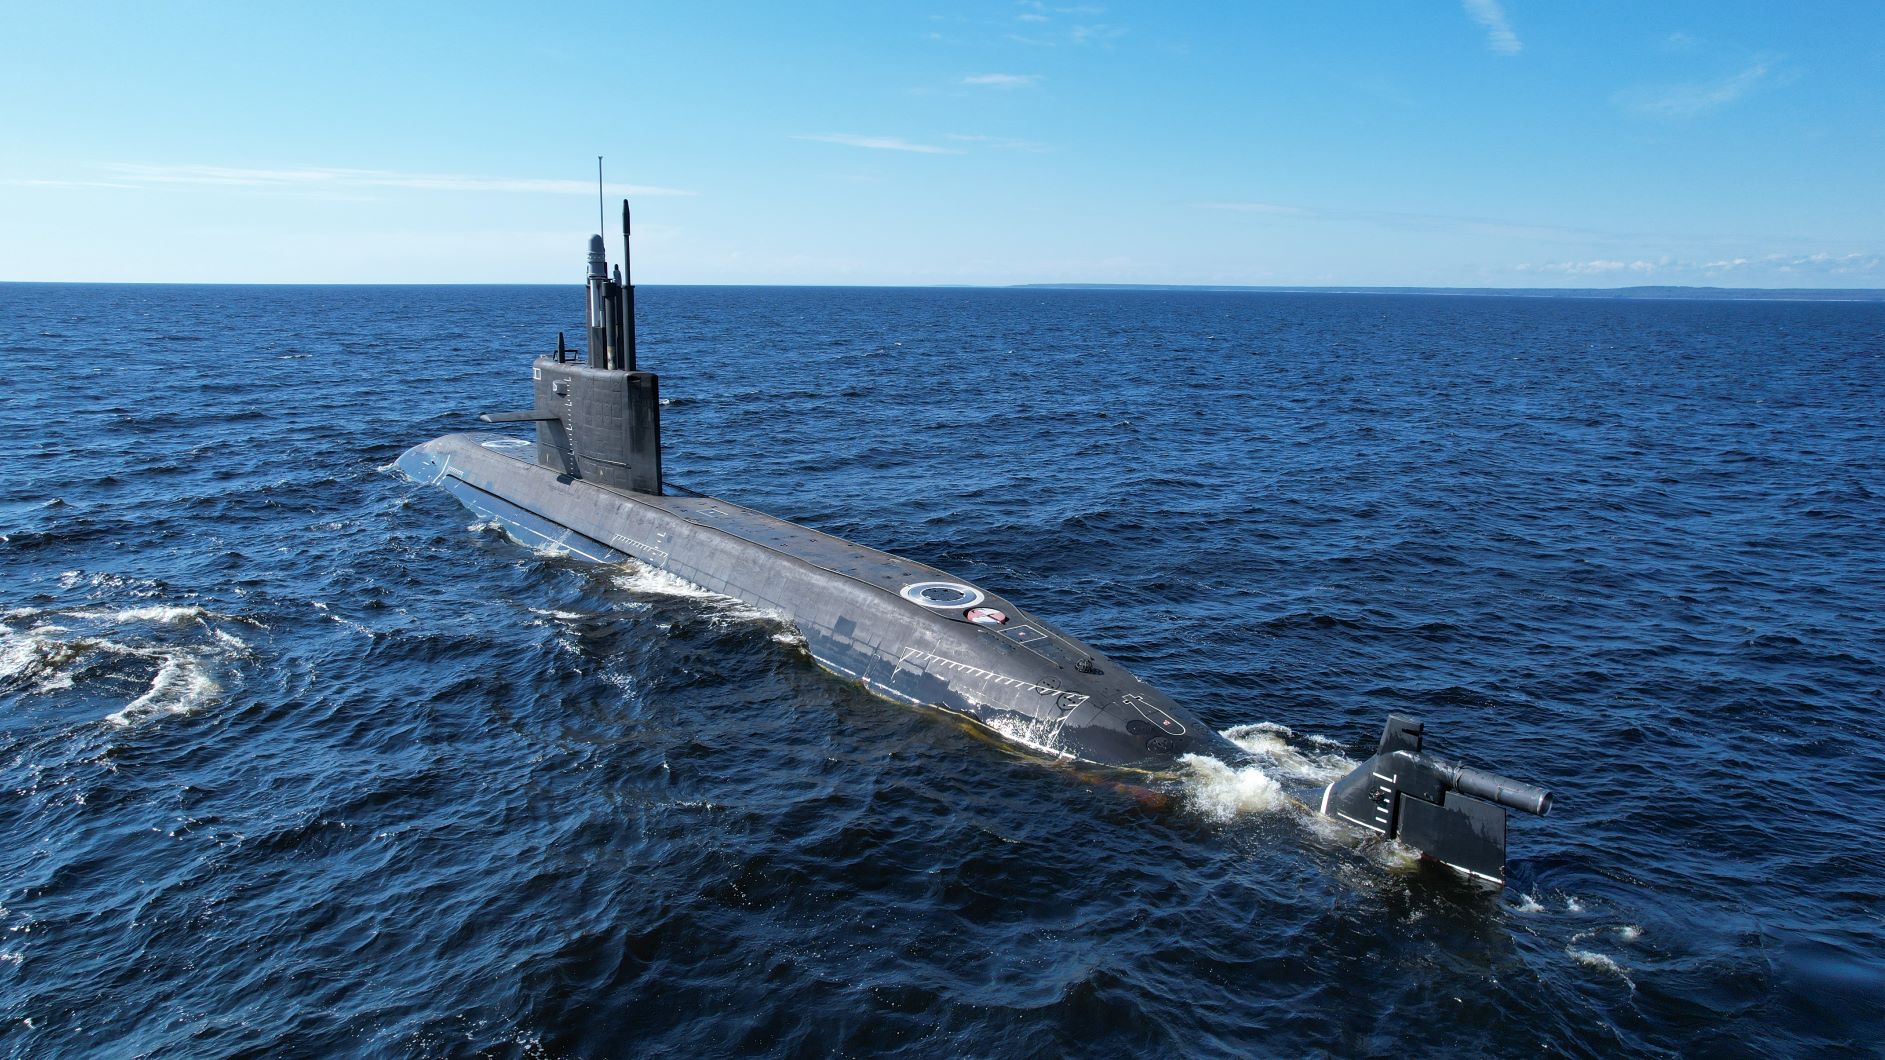 Подводная лодка проекта 677